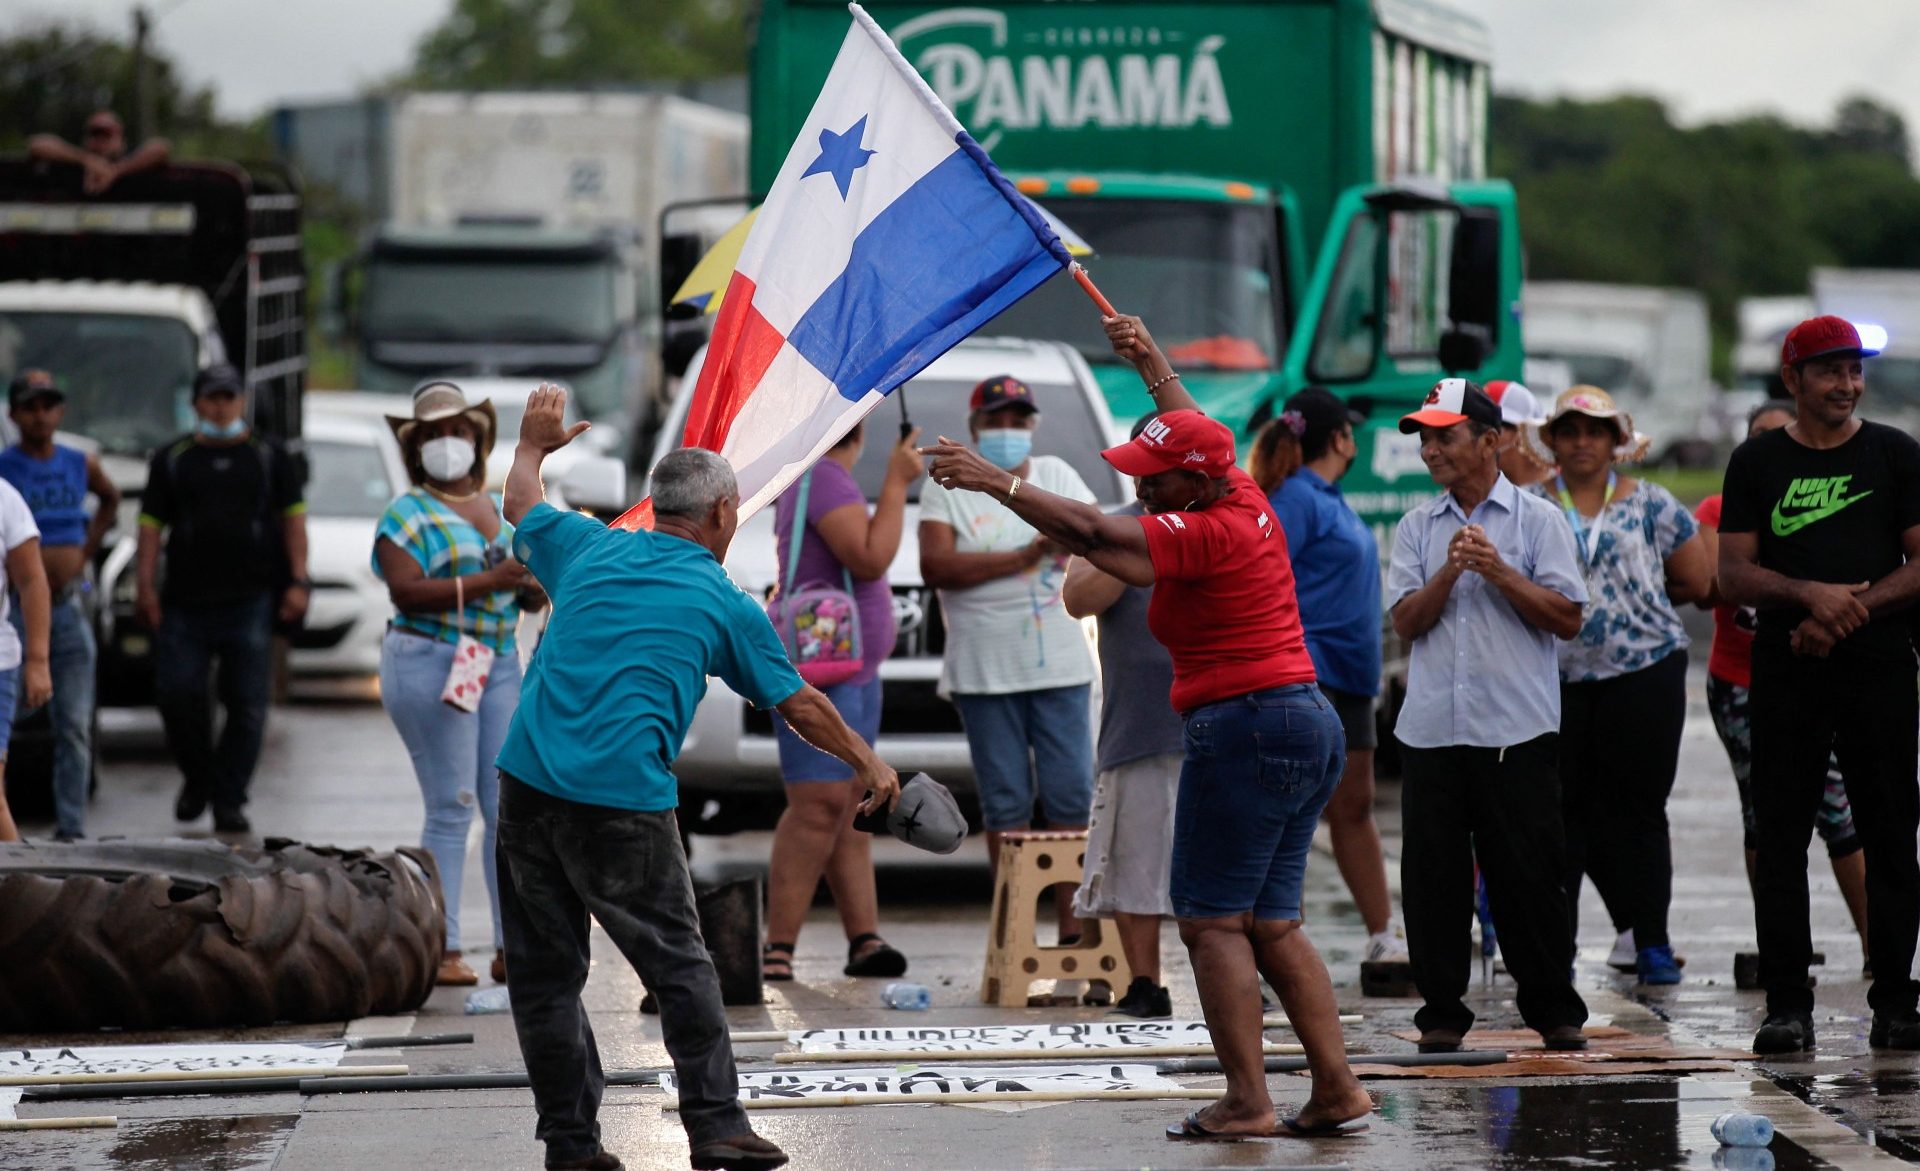 ¿Por qué protestan en Panamá?  El desencuentro de los manifestantes, el diálogo y lo que dice el gobierno